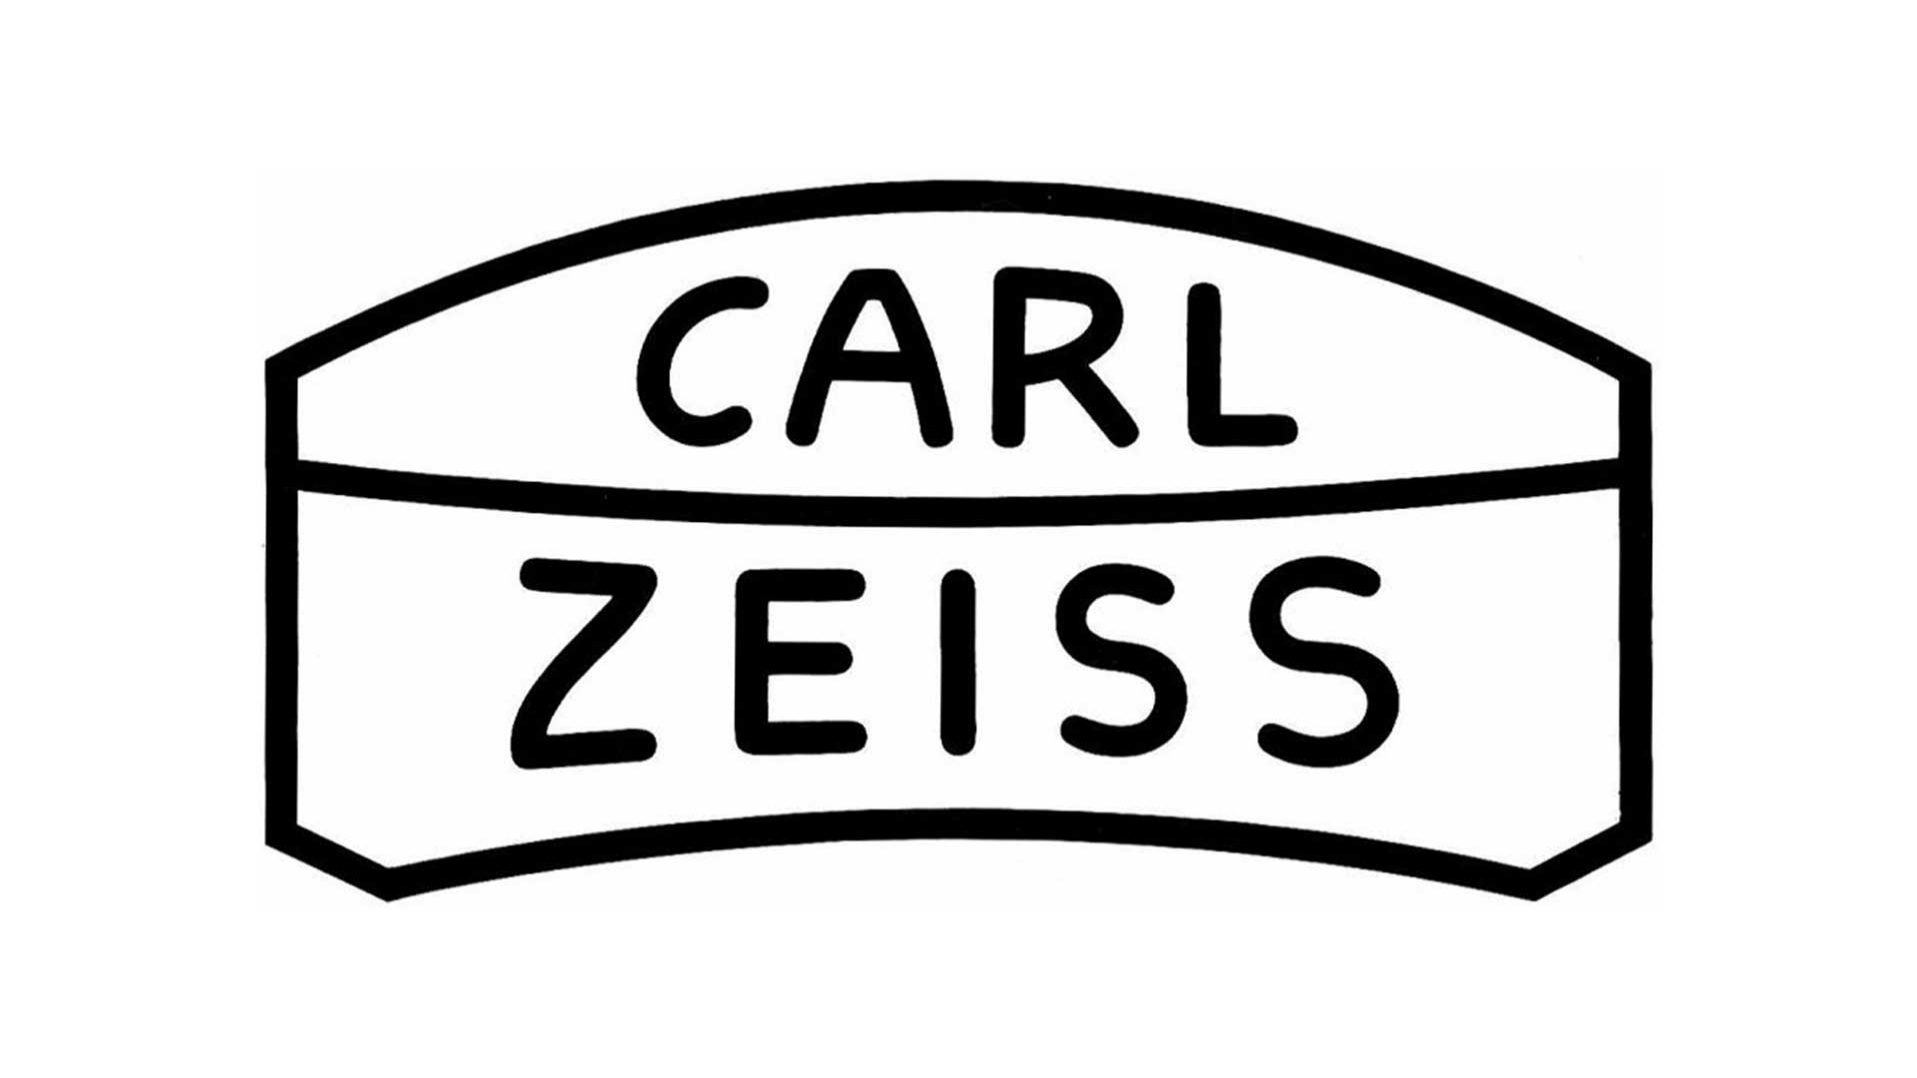 The logo of Carl Zeiss in Oberkochen from 1953-1971